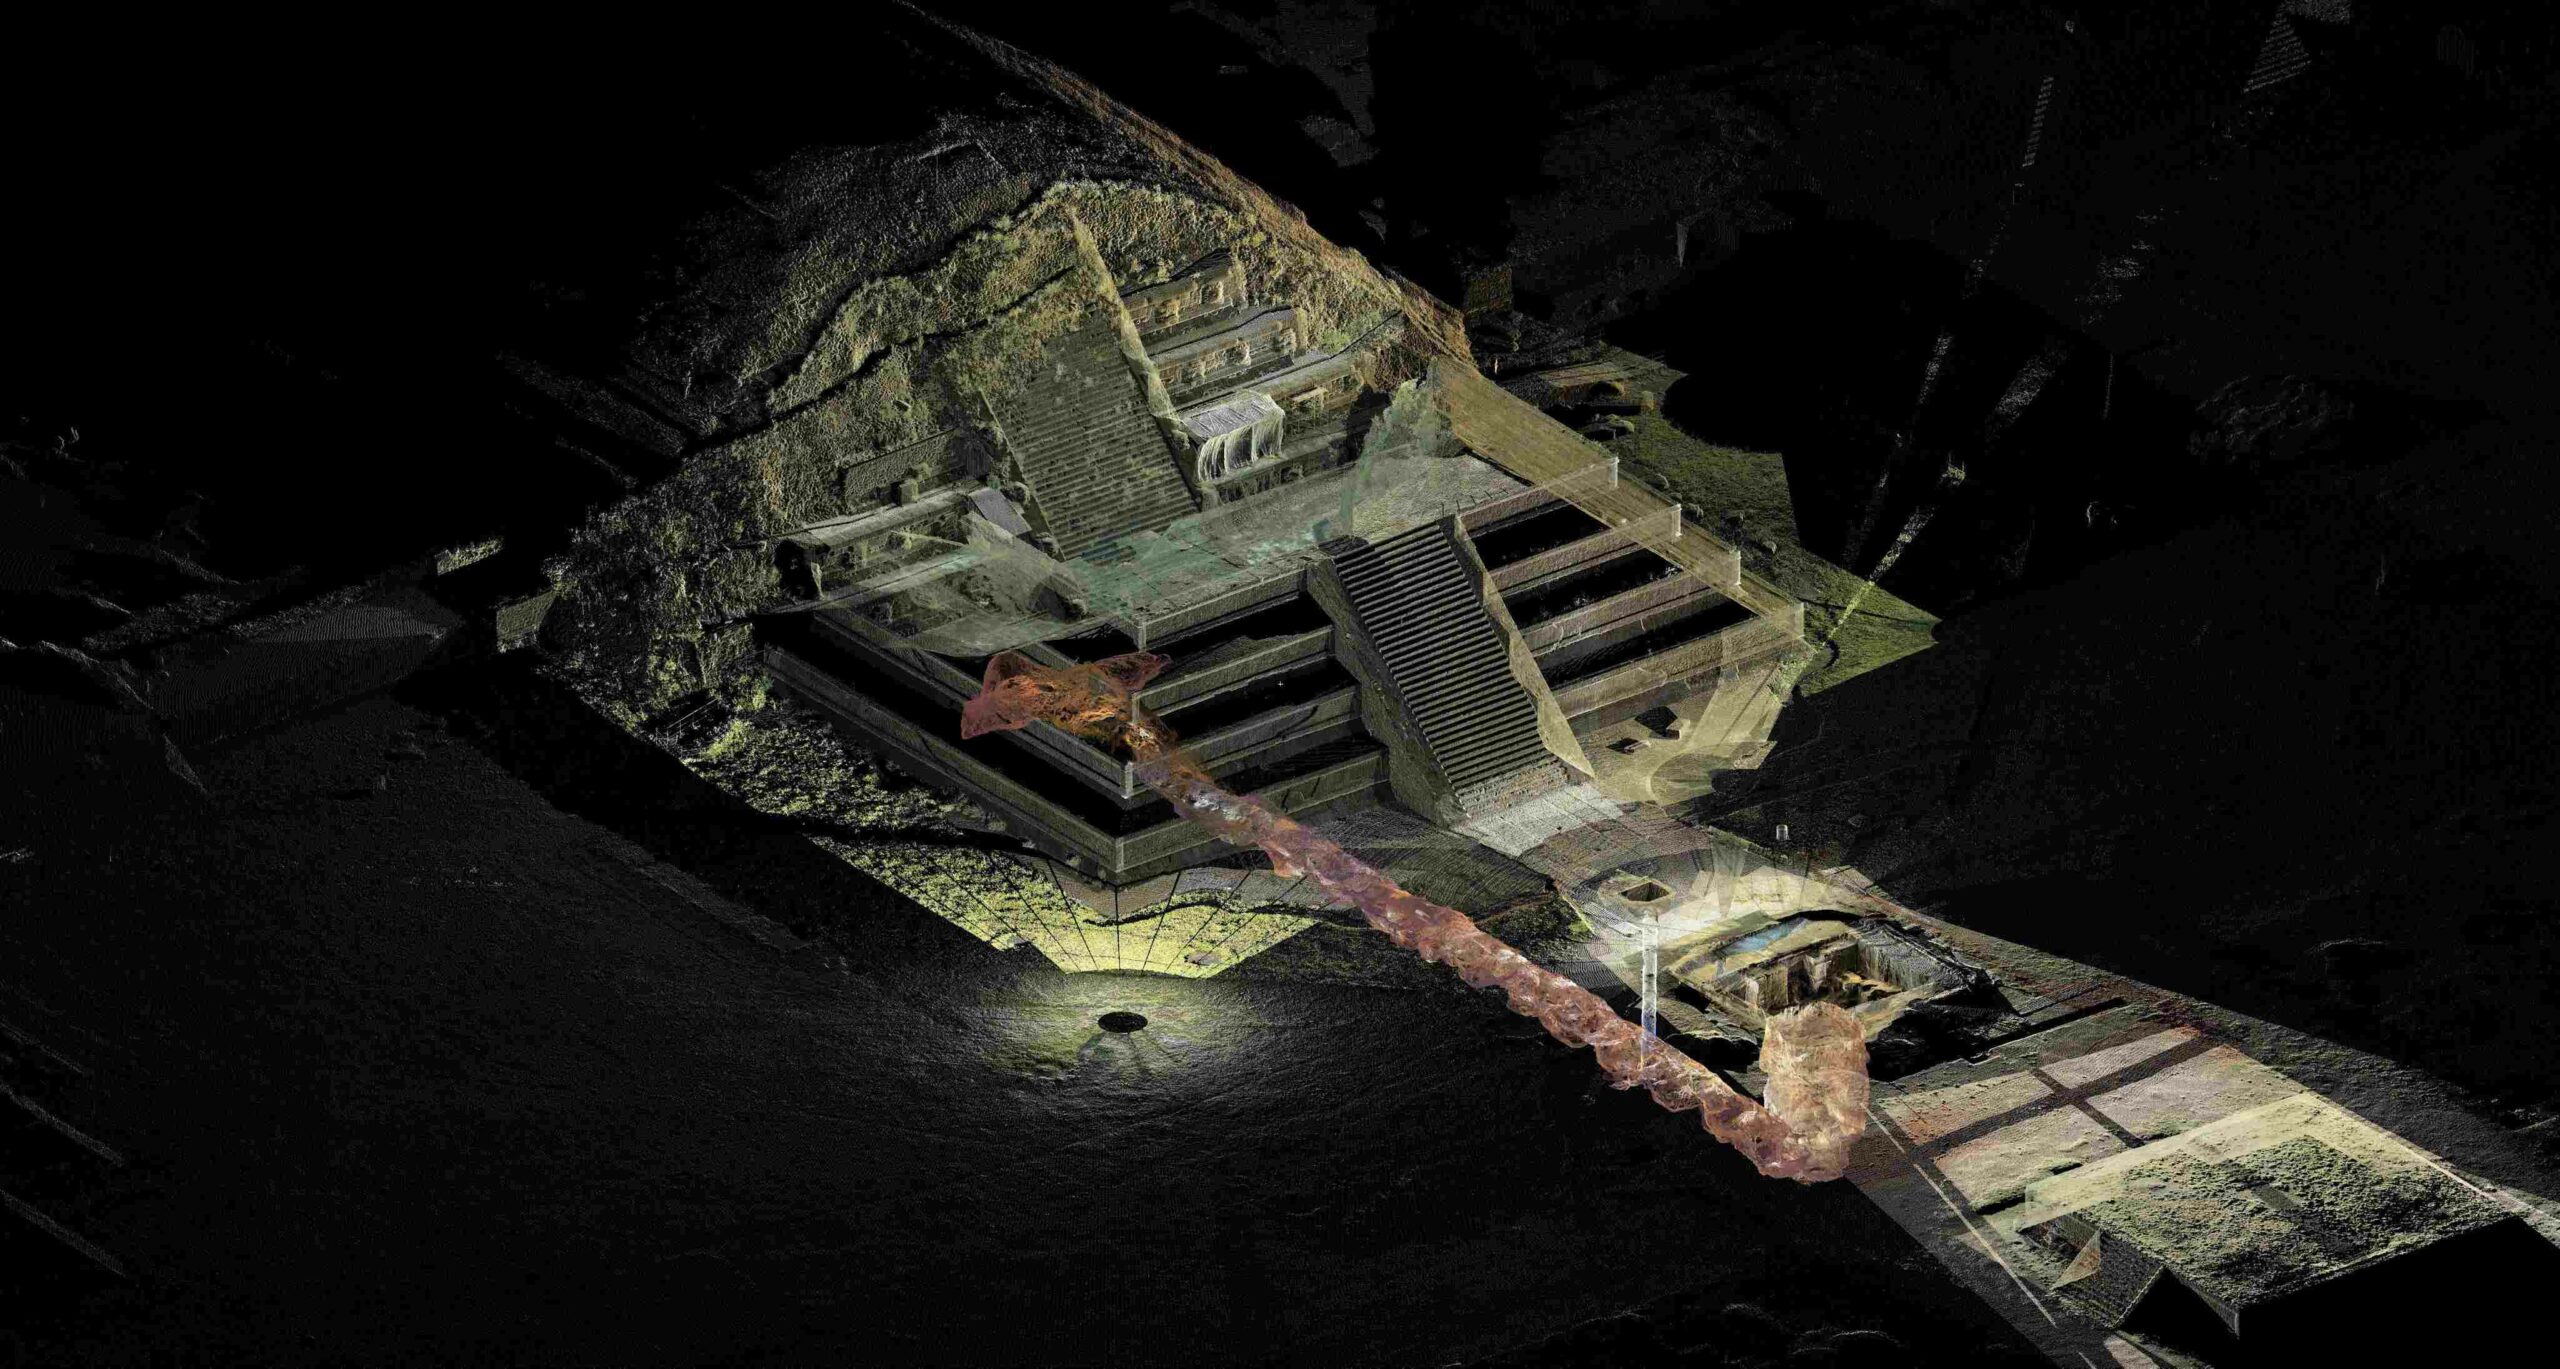 3D renders ntawm lub Tuam Tsev Quetzacoátl nyob rau hauv lub ancient nroog ntawm Teotihuacán qhia zais cia underground tunnels thiab chambers. © National Institute of Anthropology thiab Keeb Kwm (INAH)